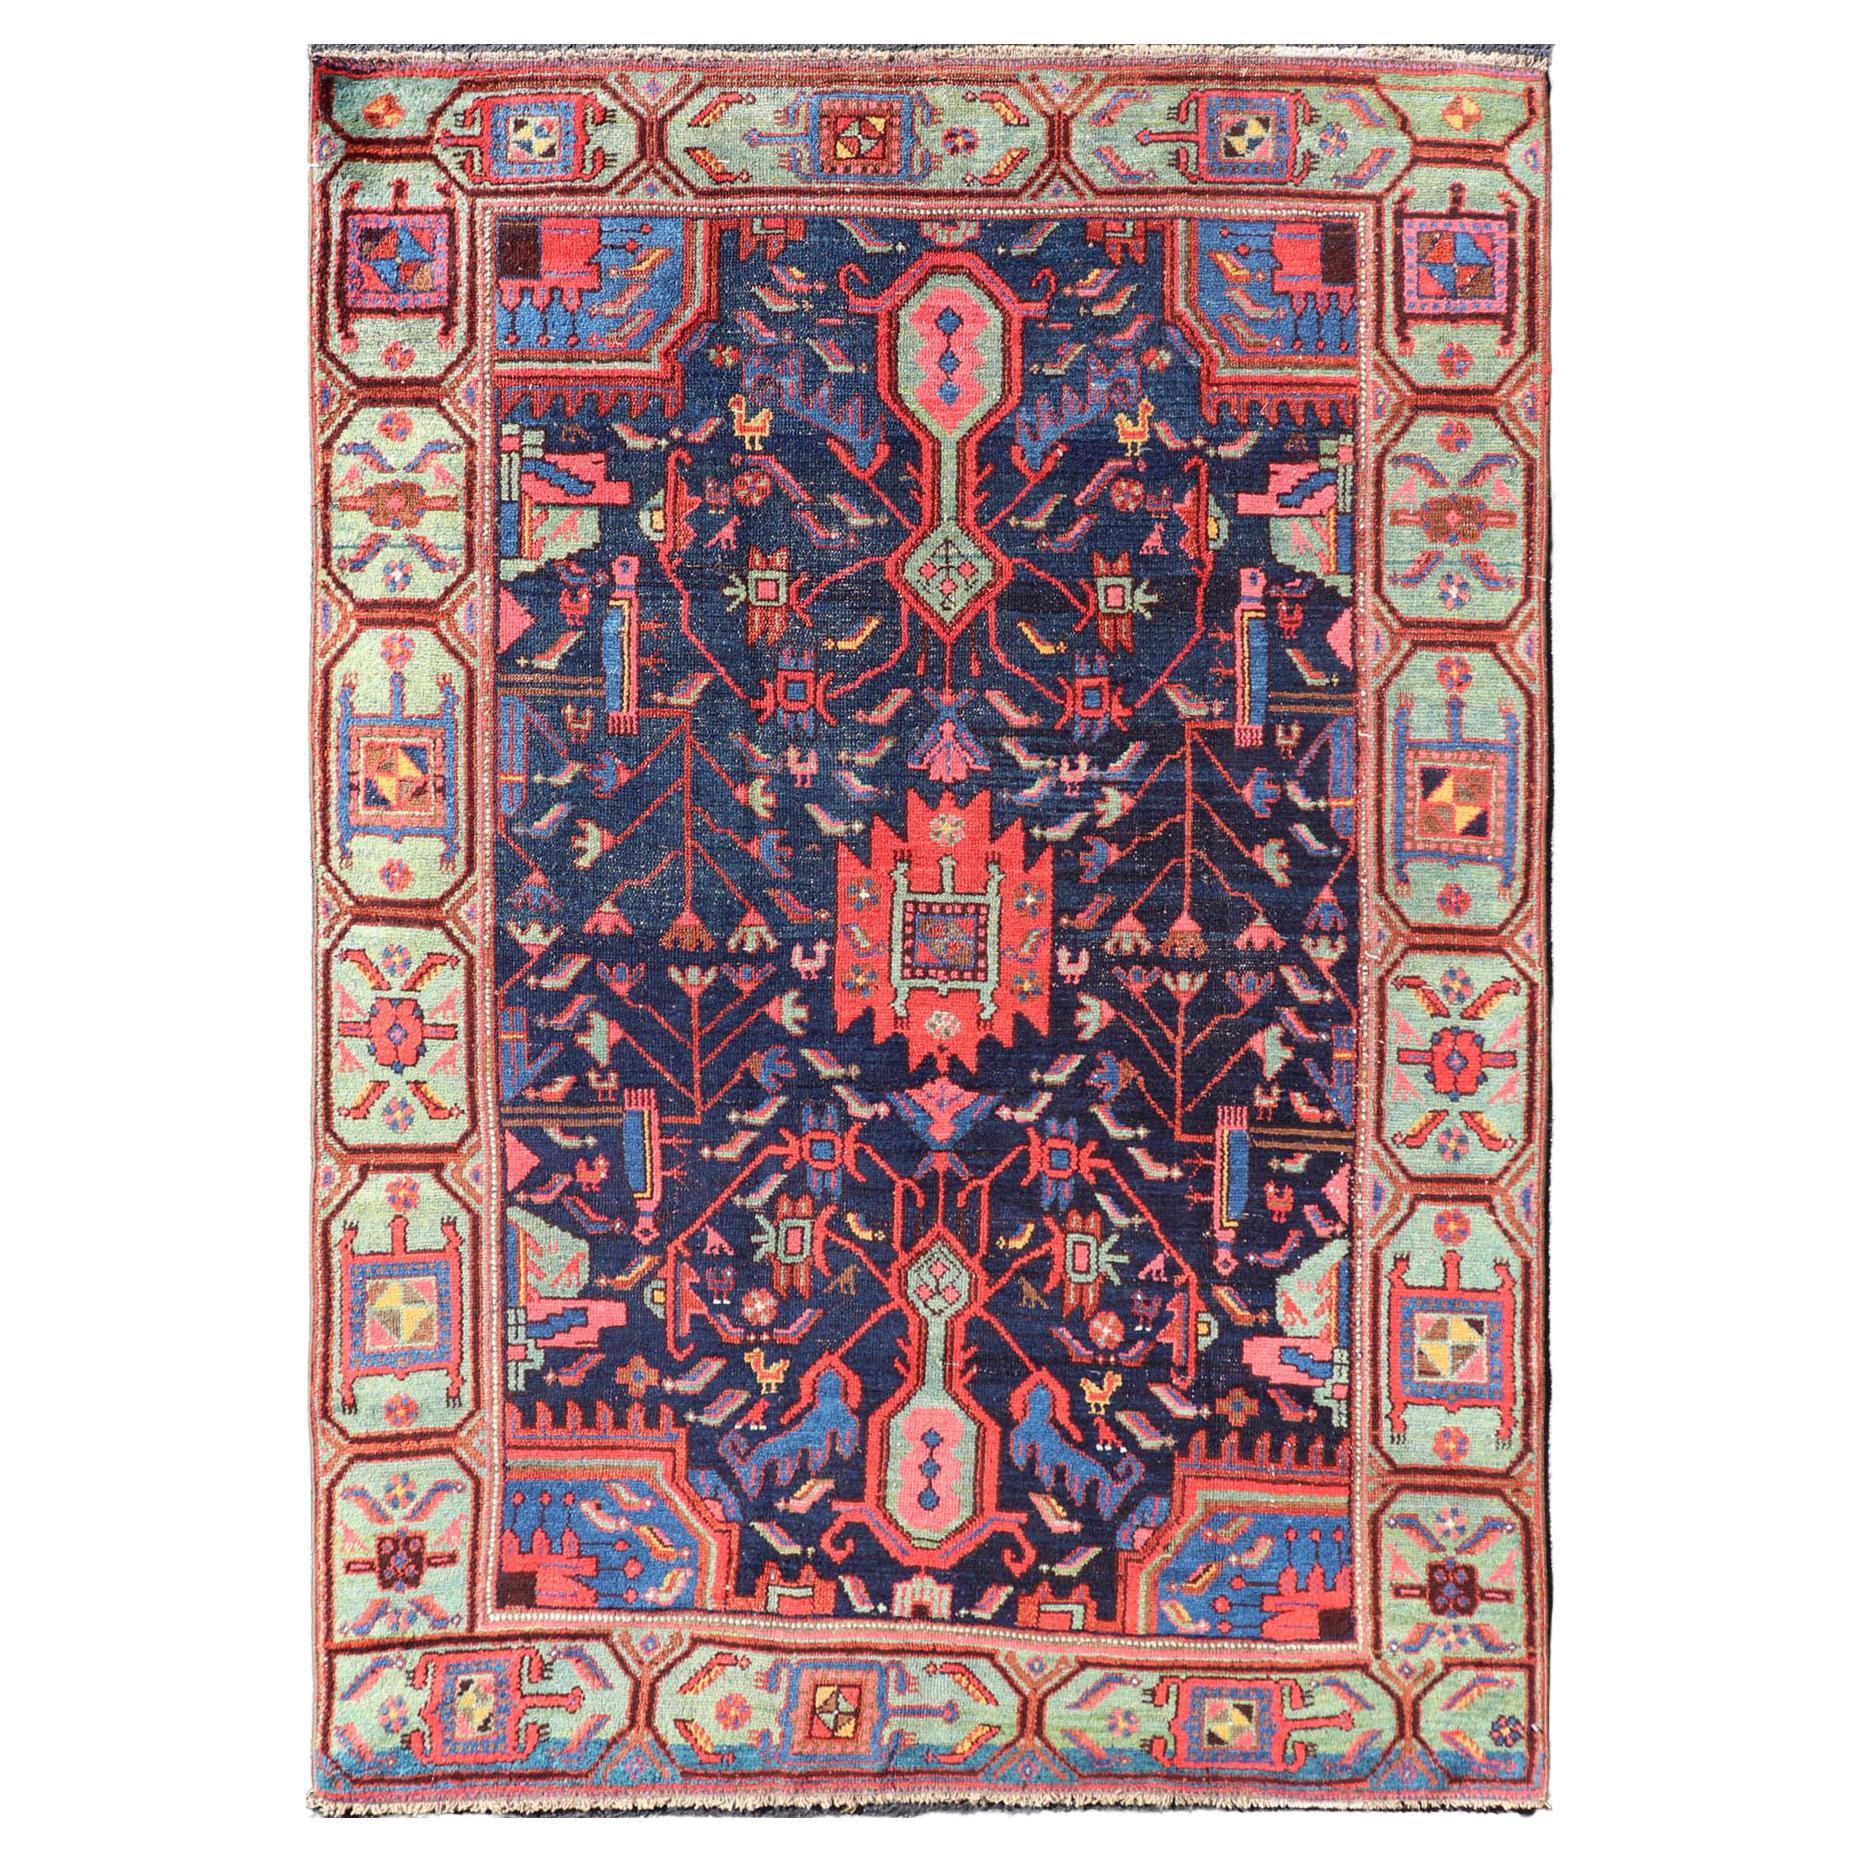 N.W. Persischer Teppich mit geometrischen Blumen in Rot, Elfenbein, Creme, Blau und Grün